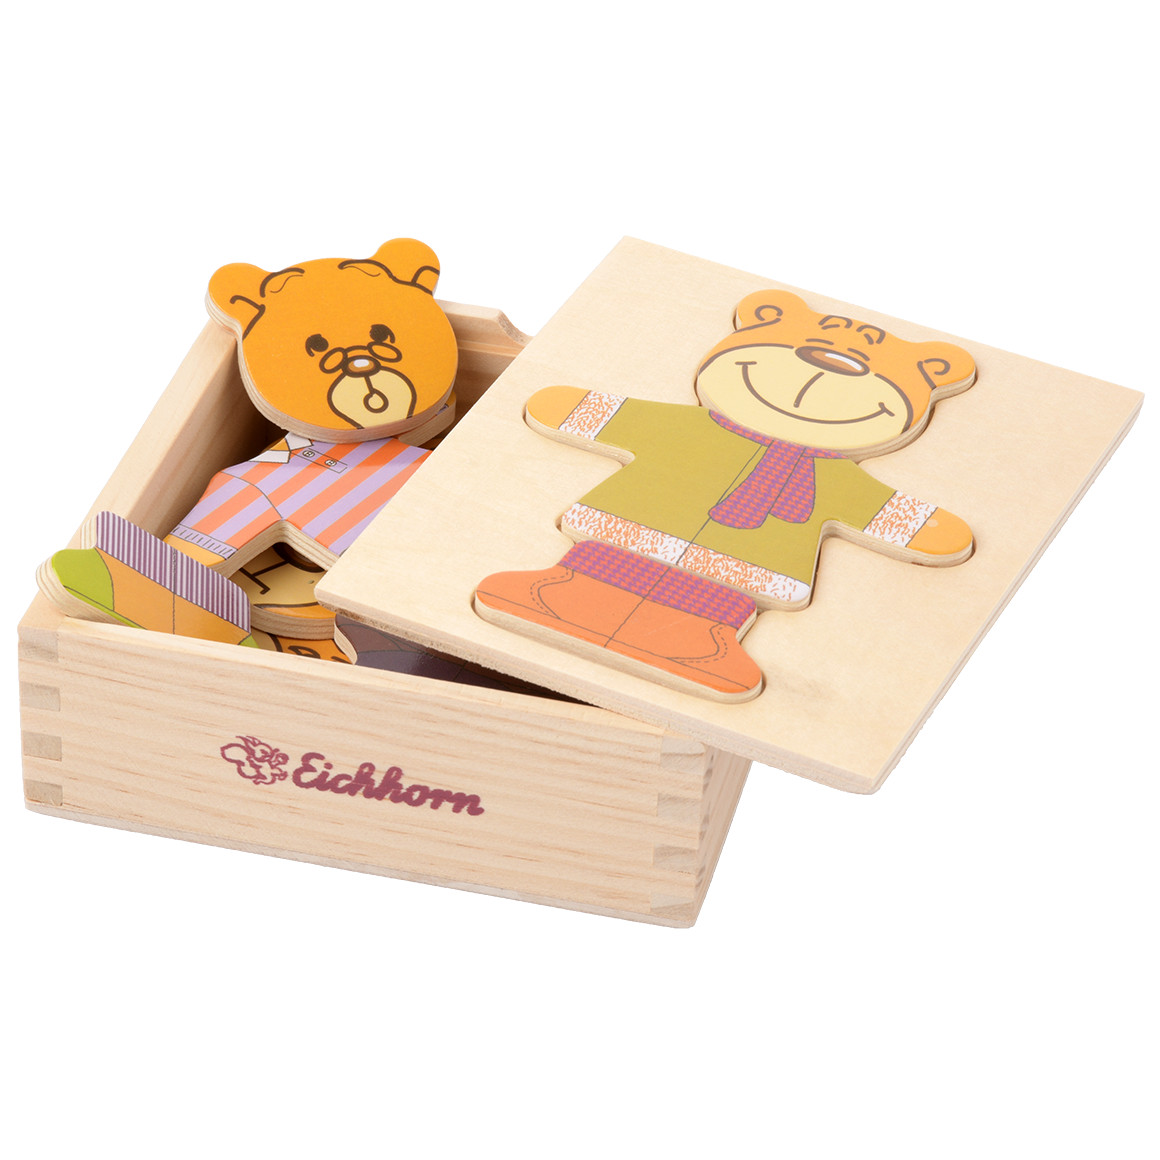 Eichhorn Holz-Puzzle mit Bären von Topomini